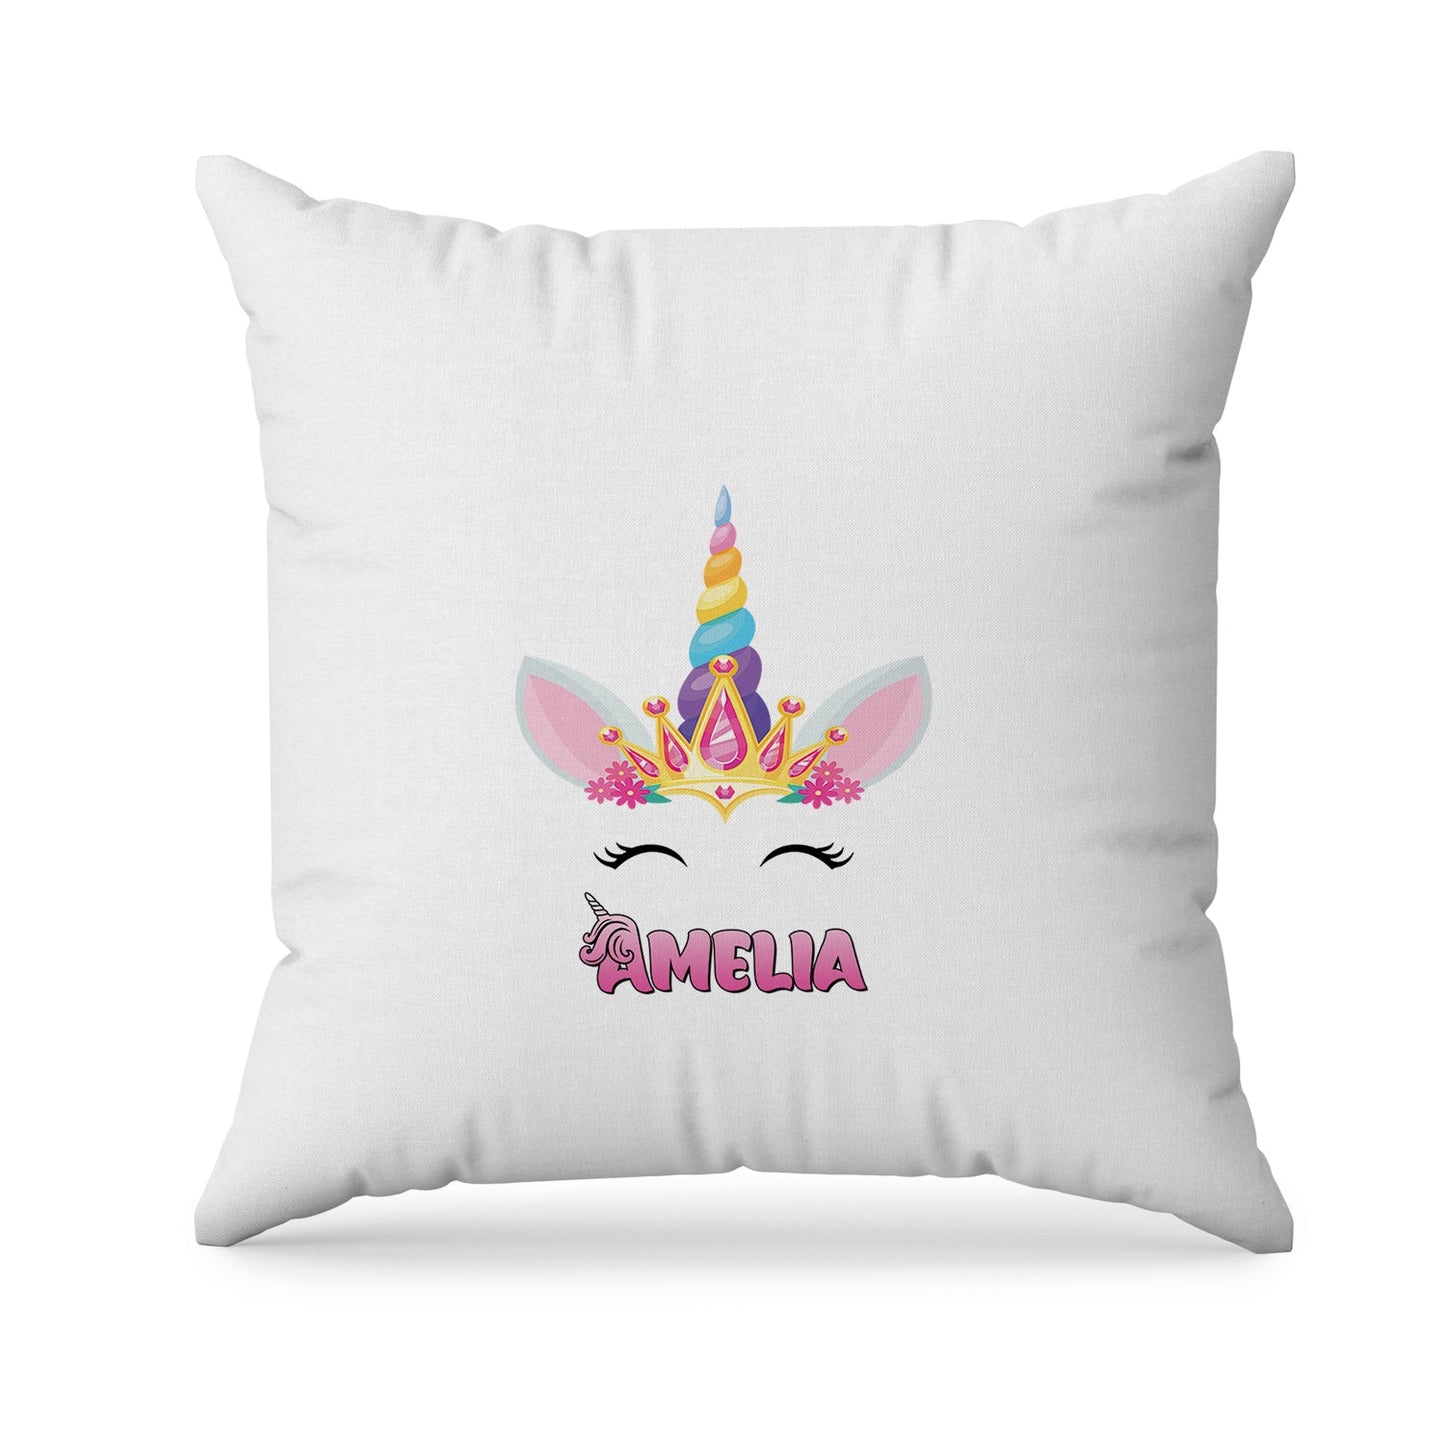 Unicorn design on sublimation pillowcase